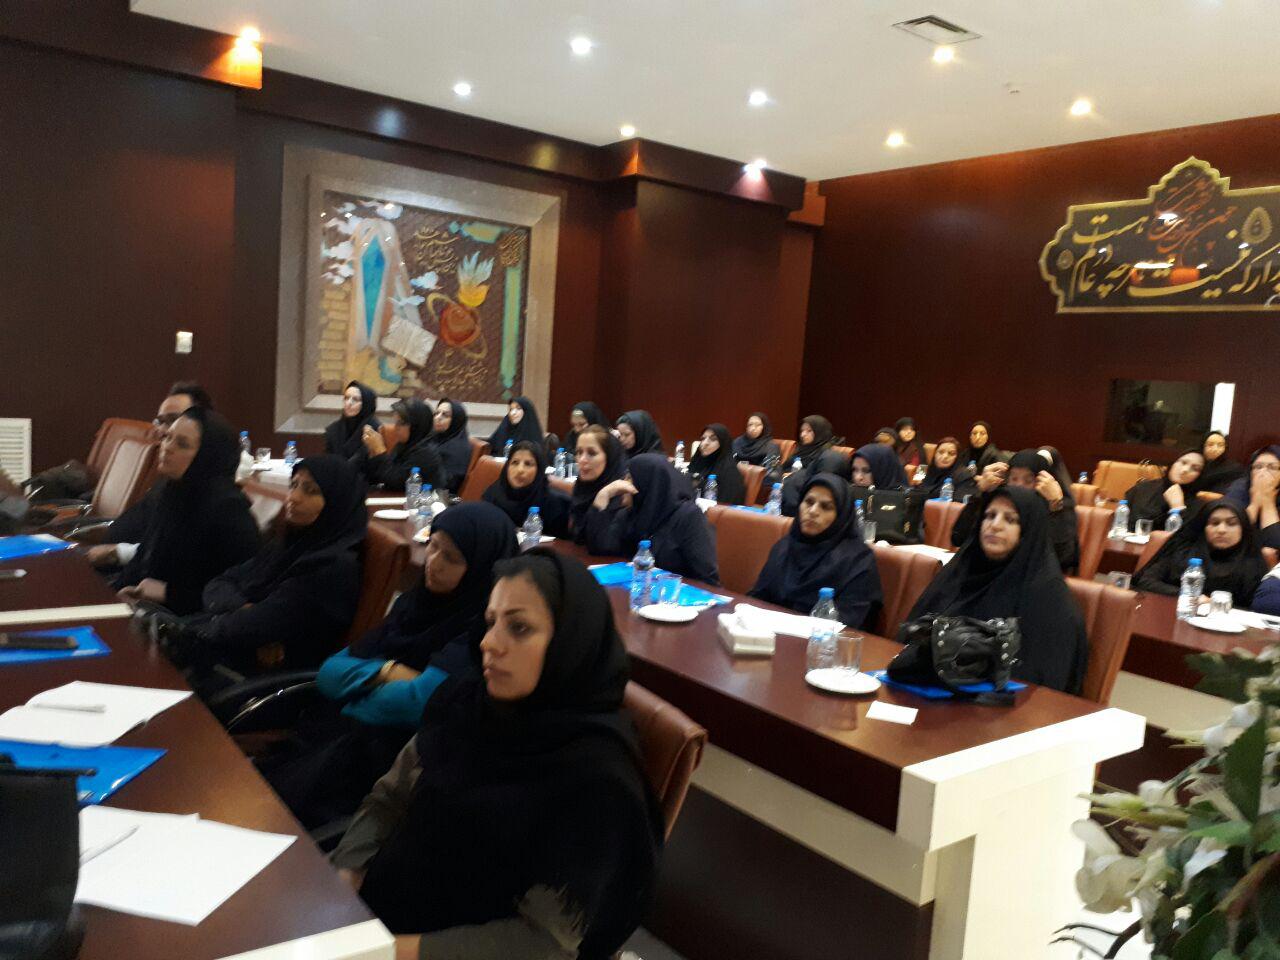 برگزاری سمینار آموزش پرستاری دستگاه های دیالیز  4008s Classic فرزنیوس در مشهد 1